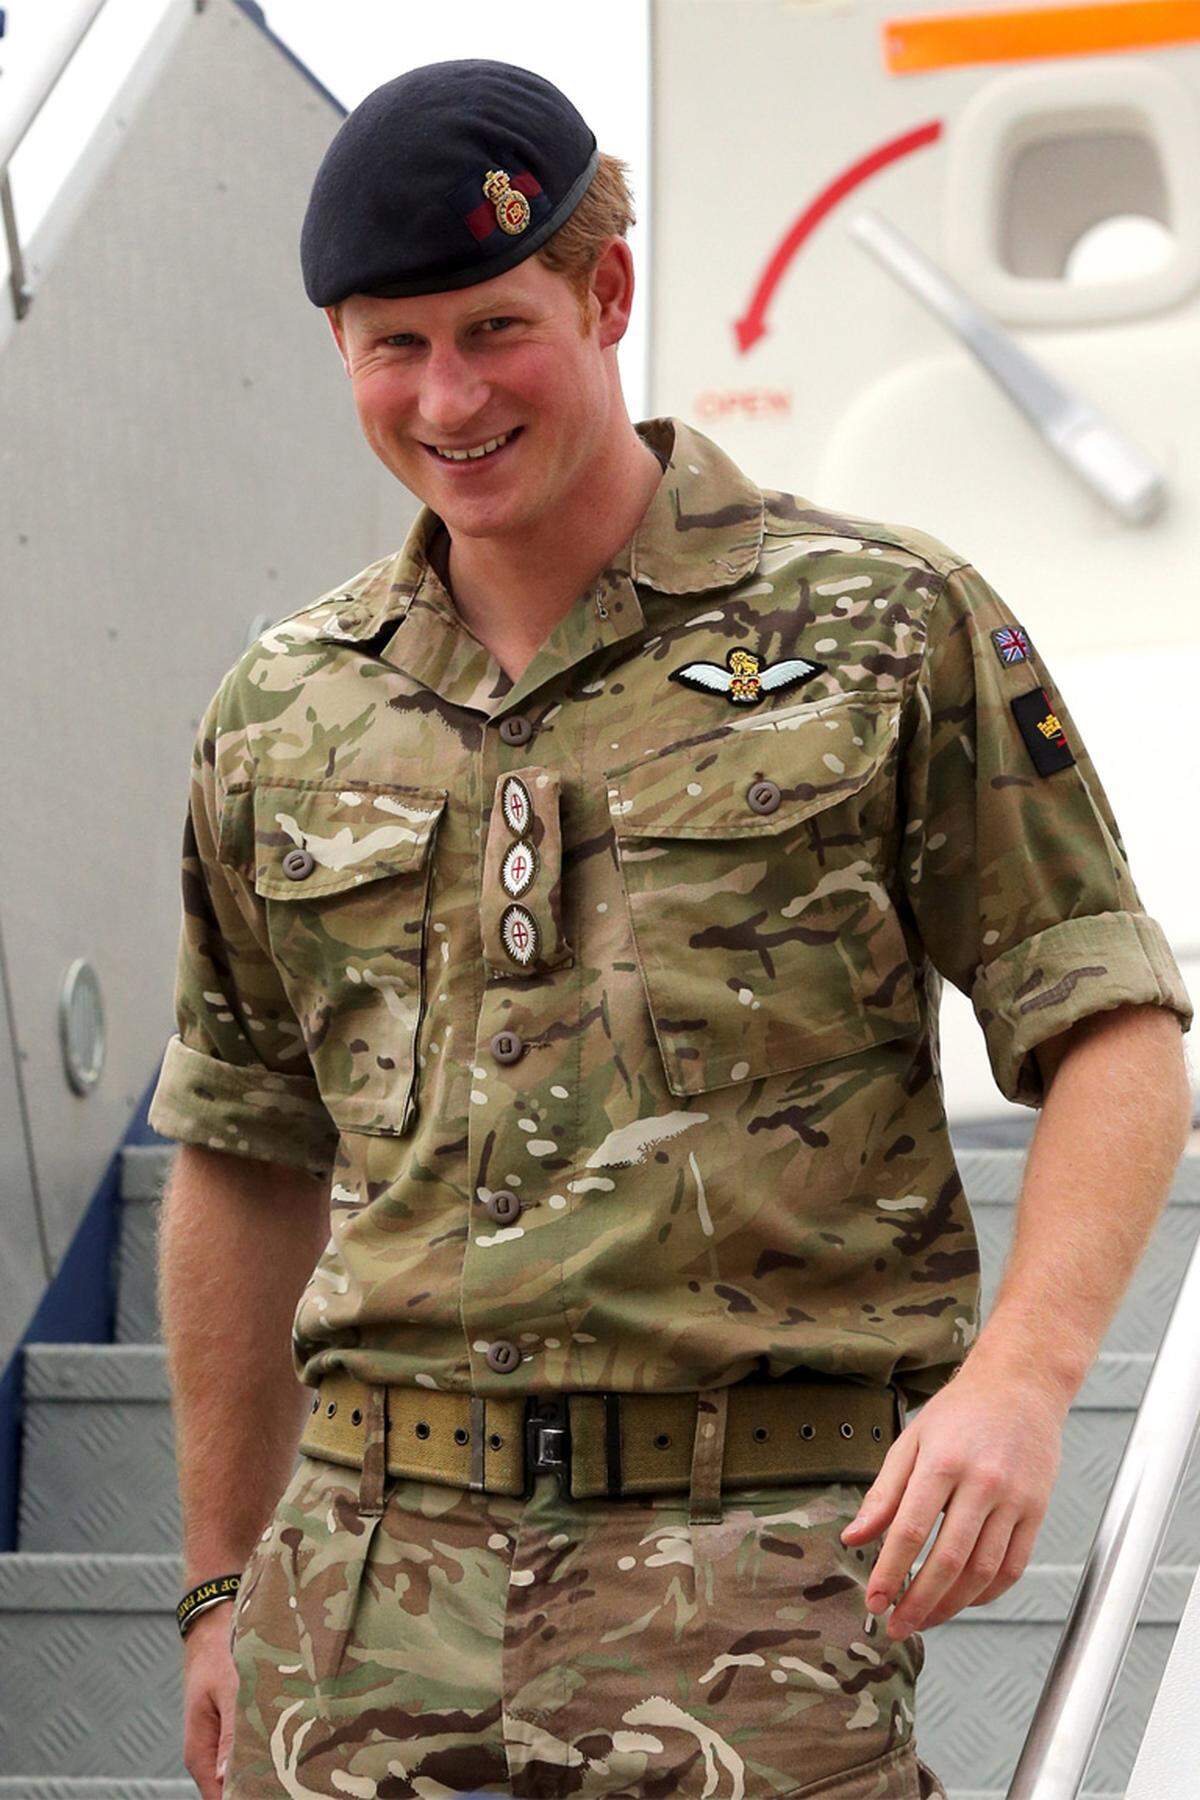 Harry kam in Sydney zunächst im militärischen Tarnanzug an, wechselte dann aber für den Auftritt in Canberra in eine weiße Paradeuniform.